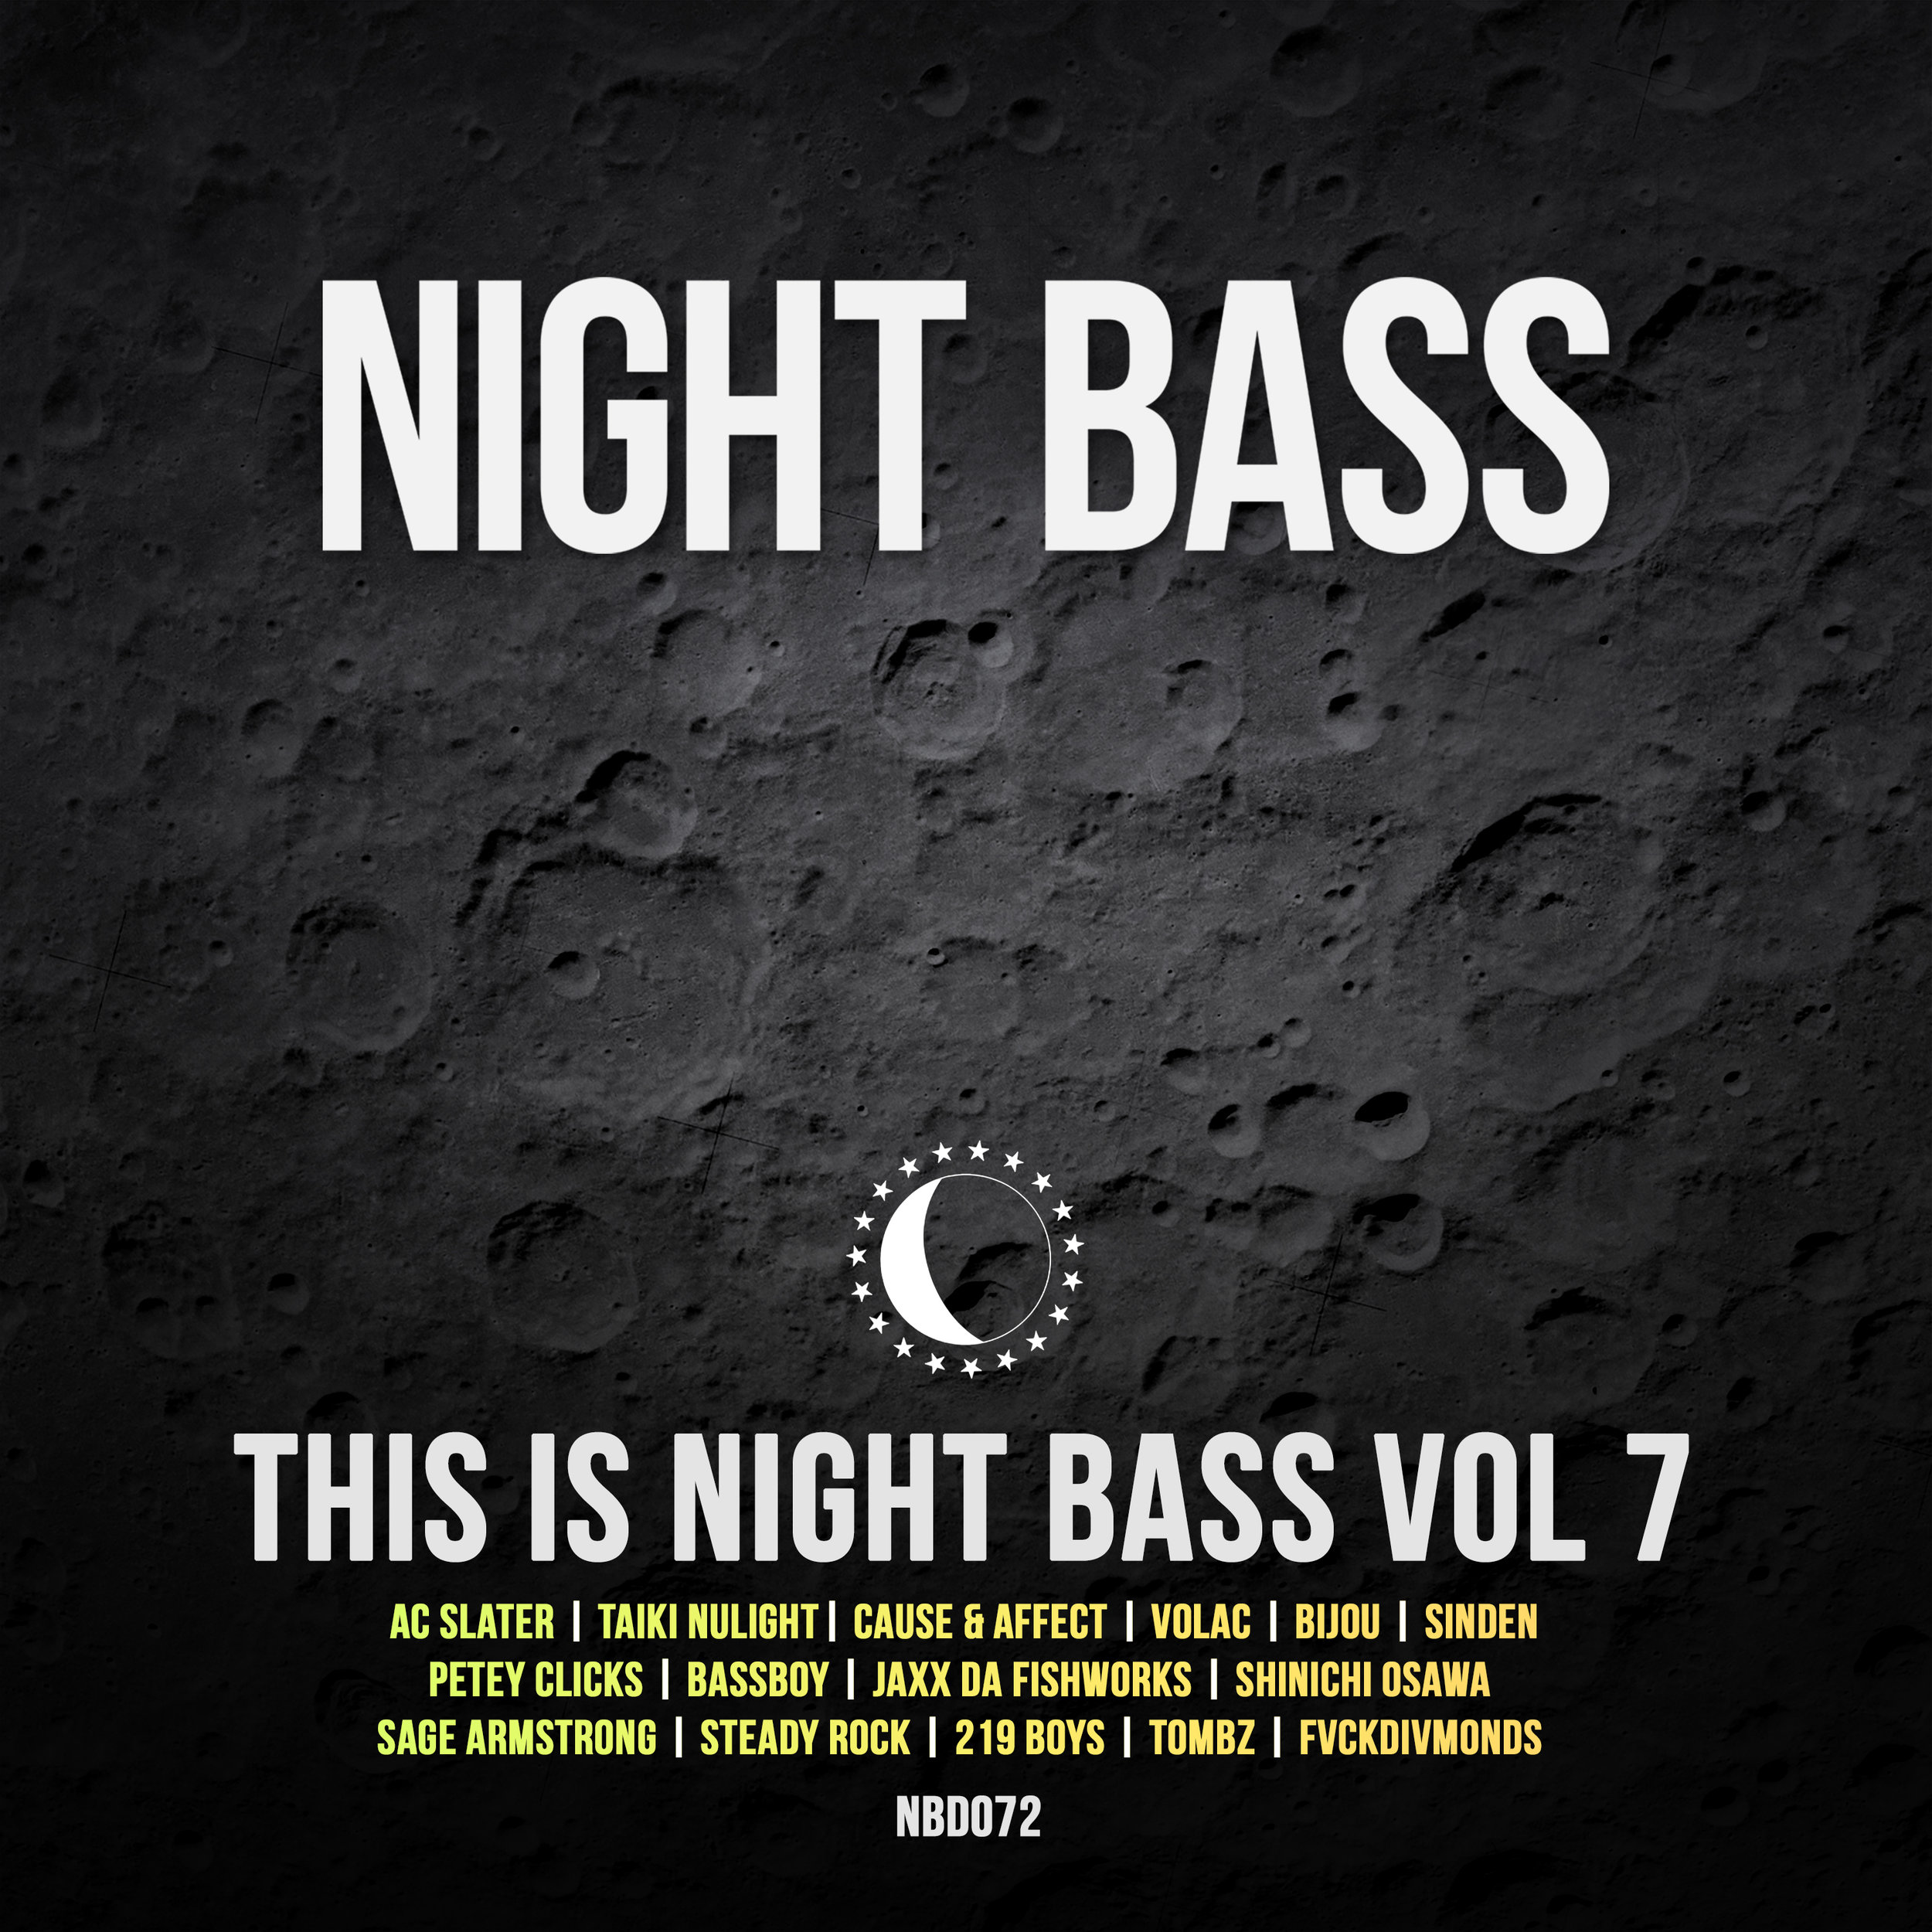 NBD072 - This is Night Bass Vol 7 (2).jpg